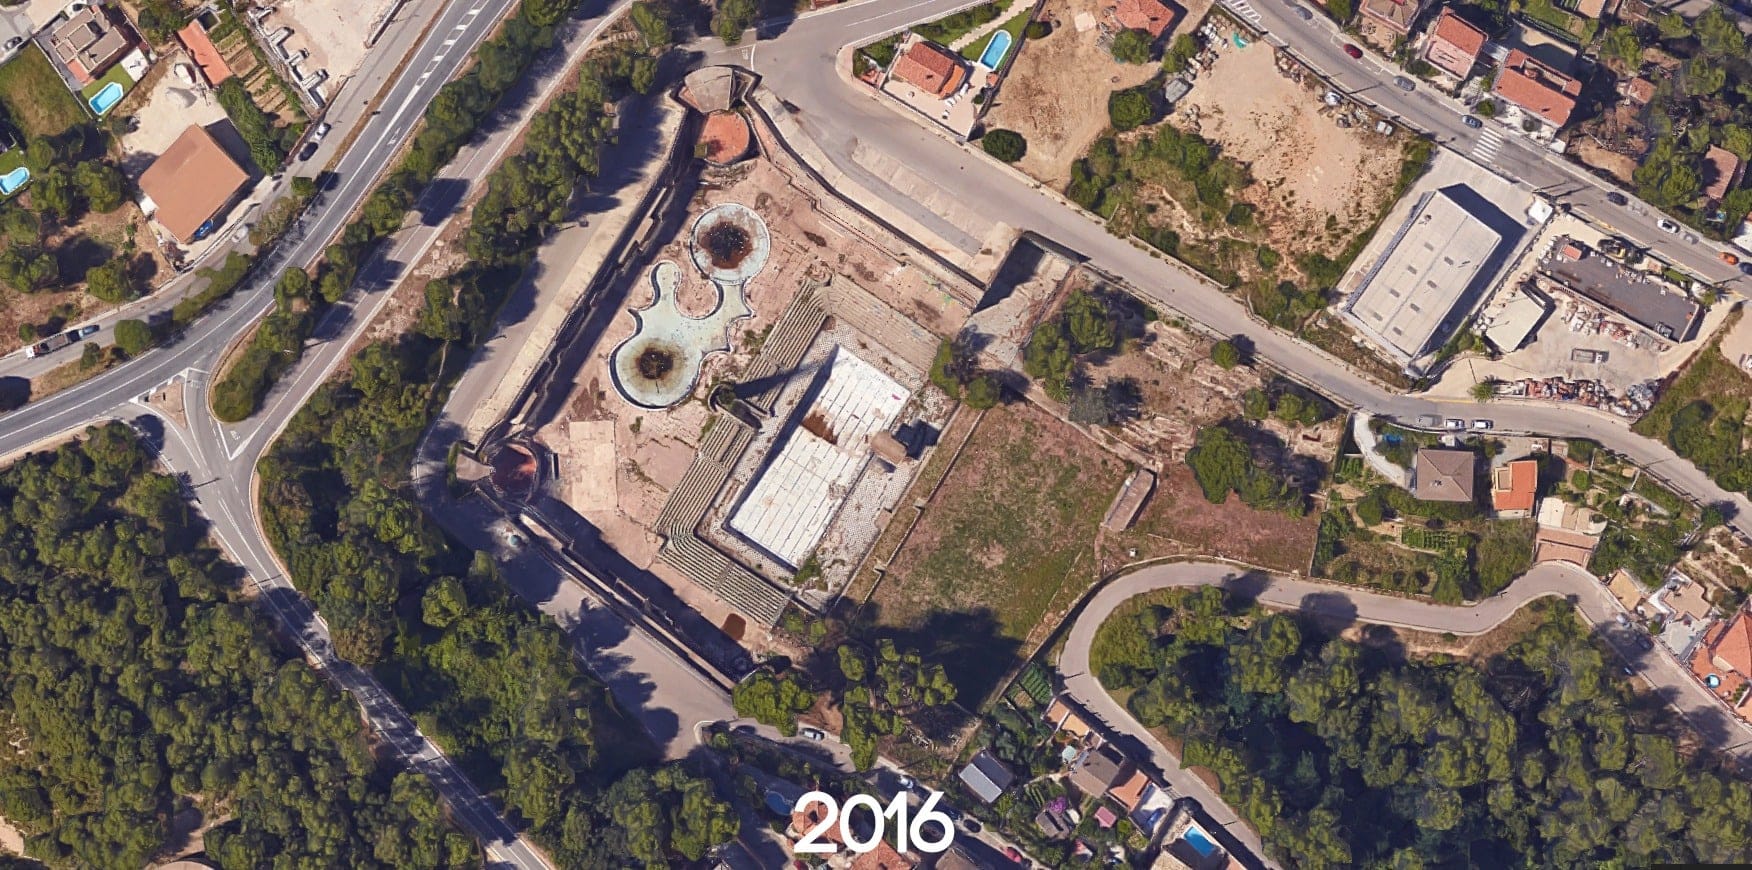 Piscine olympique abandonnée en Espagne | urbexsession.com/piscine-olympique-de-vega | Urbex Espagne